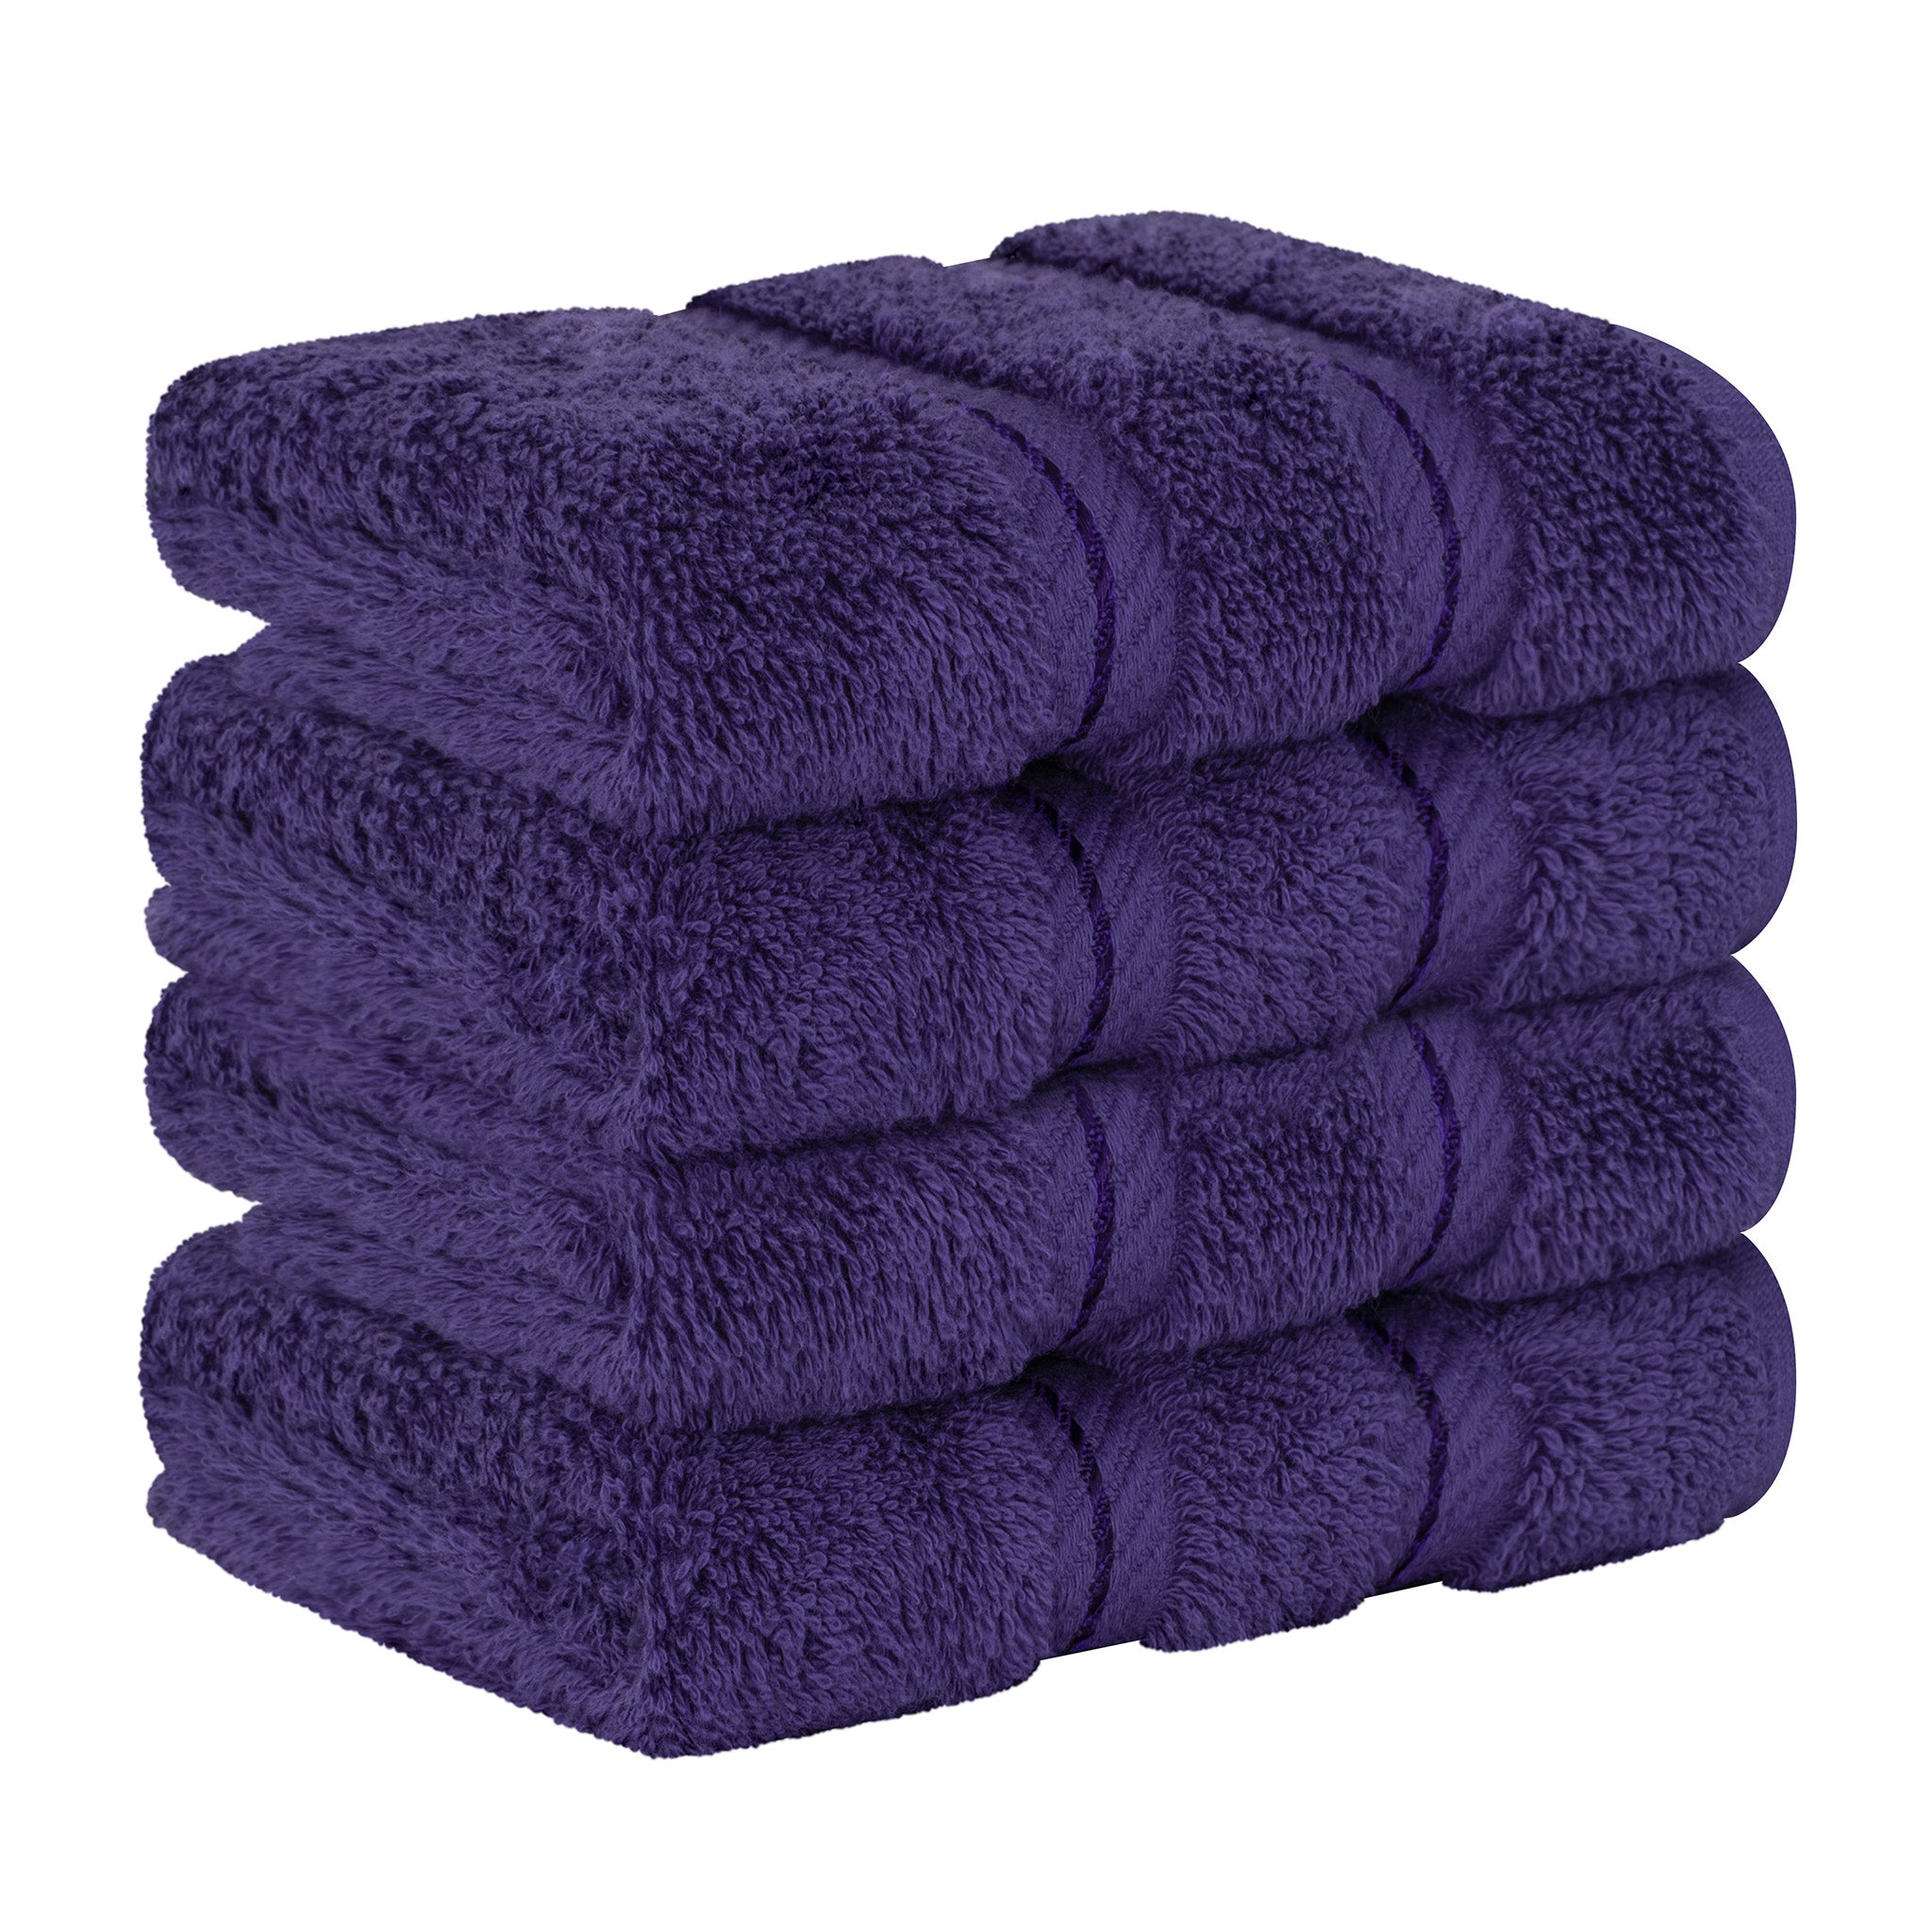 American Soft Linen 100% Turkish Cotton 4 Piece Washcloth Set purple-6